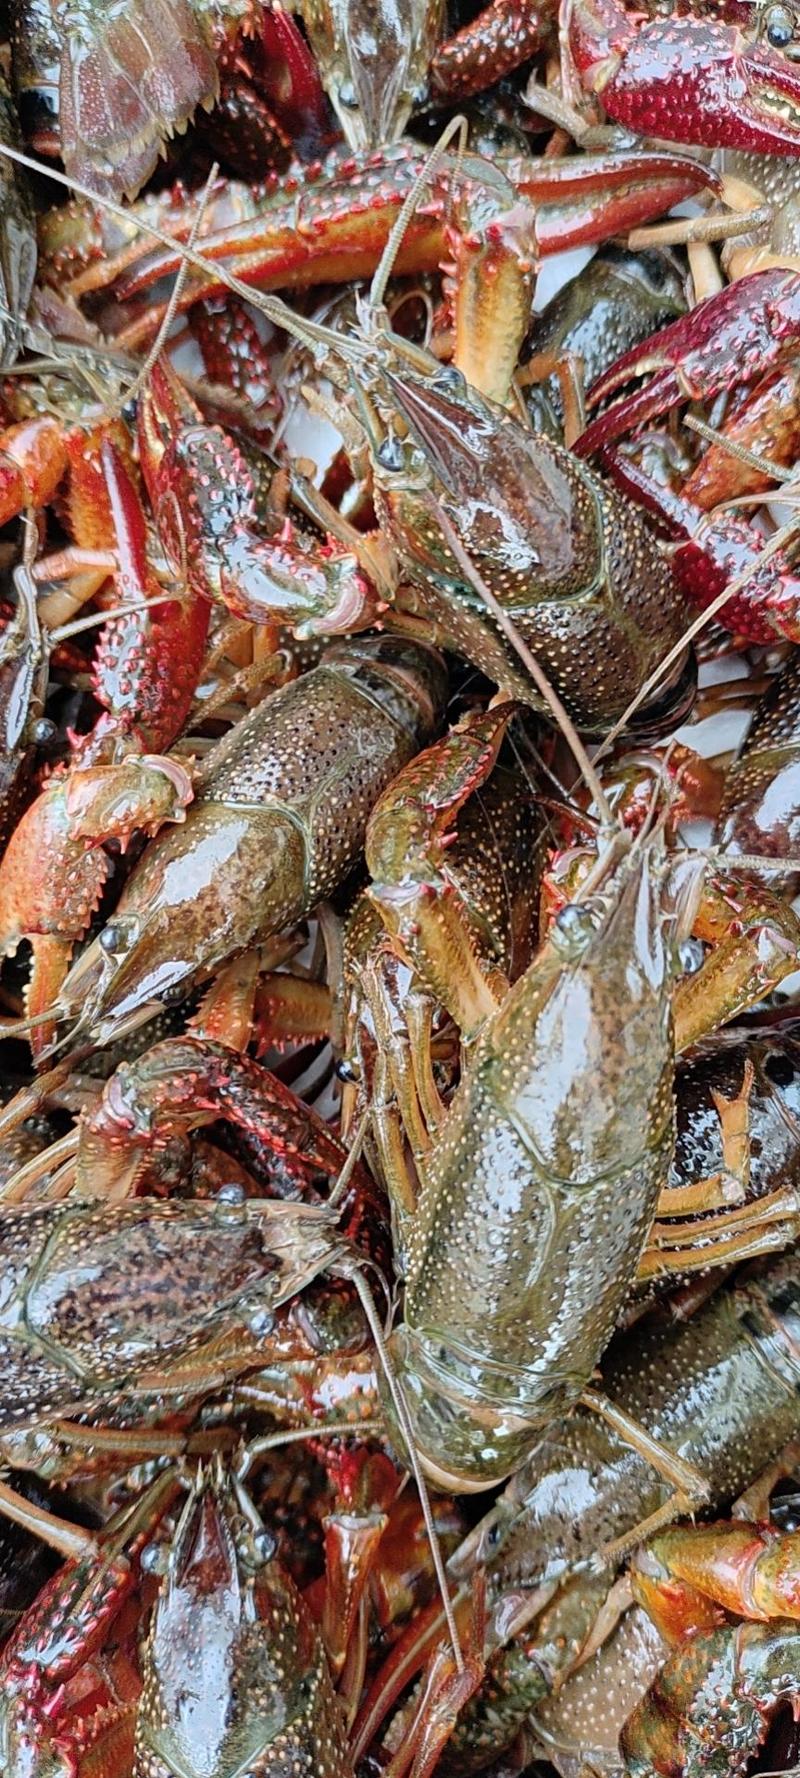 【精品青虾】江苏清水小龙虾:精品干净满肉，货源充足量大